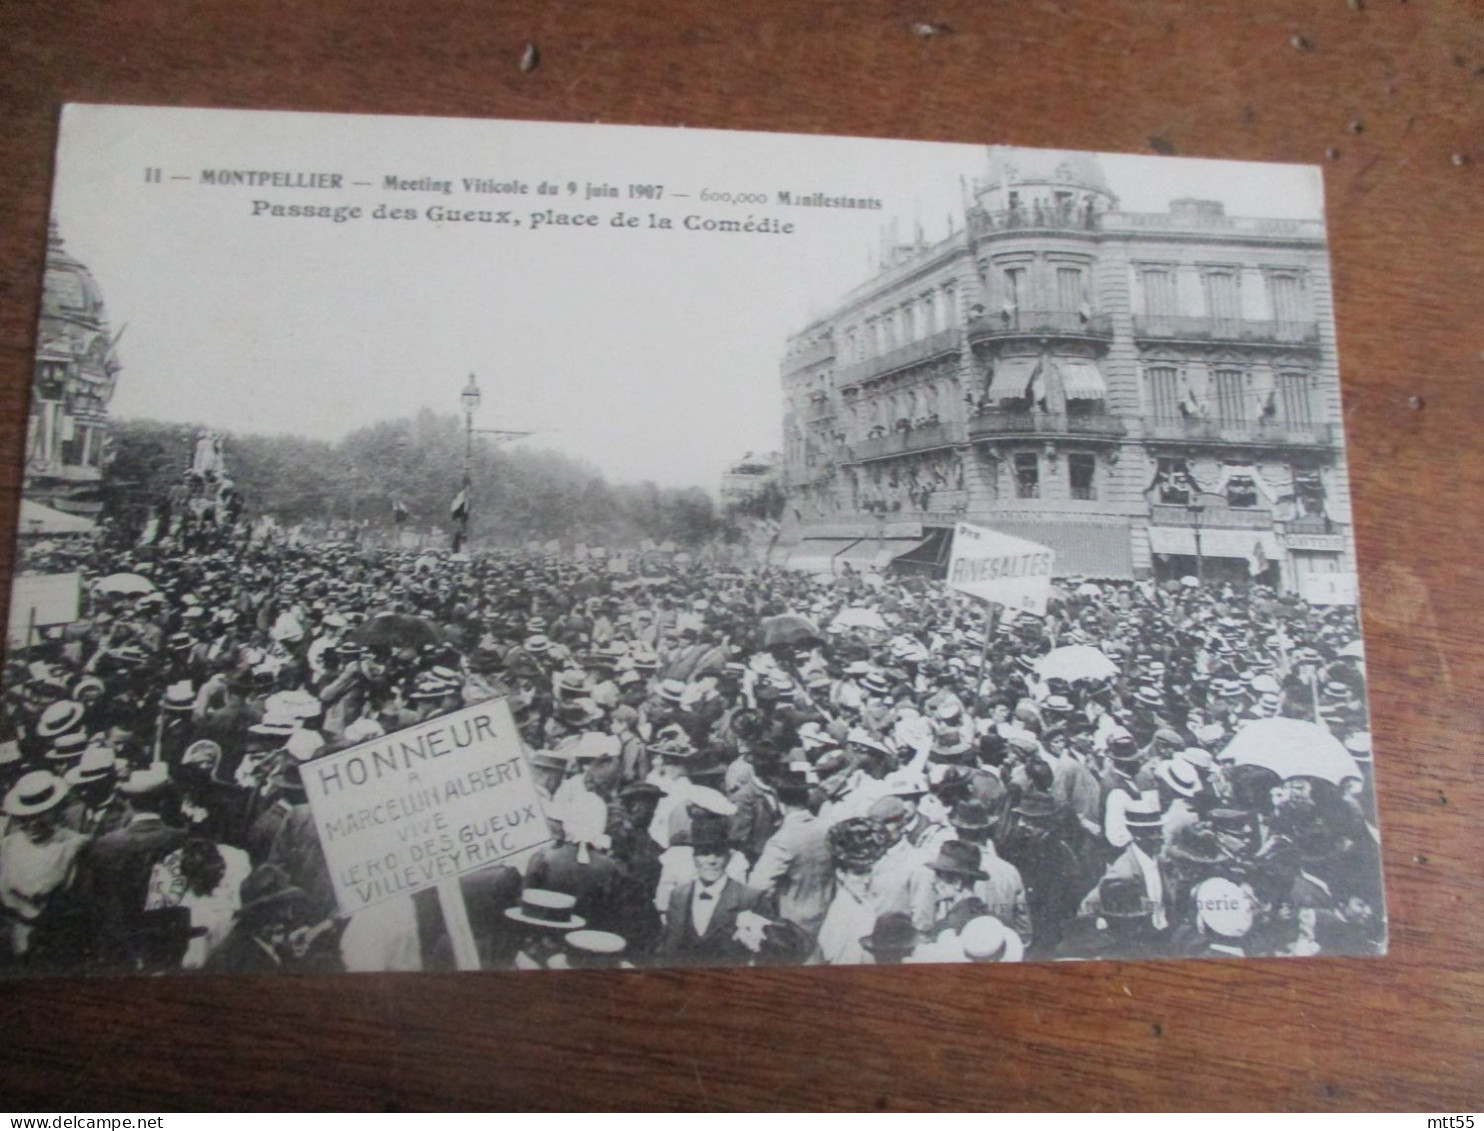 MONTPELLIER MEETING VINICOLE 1907  PASSAGE DES GUEUX - Montpellier